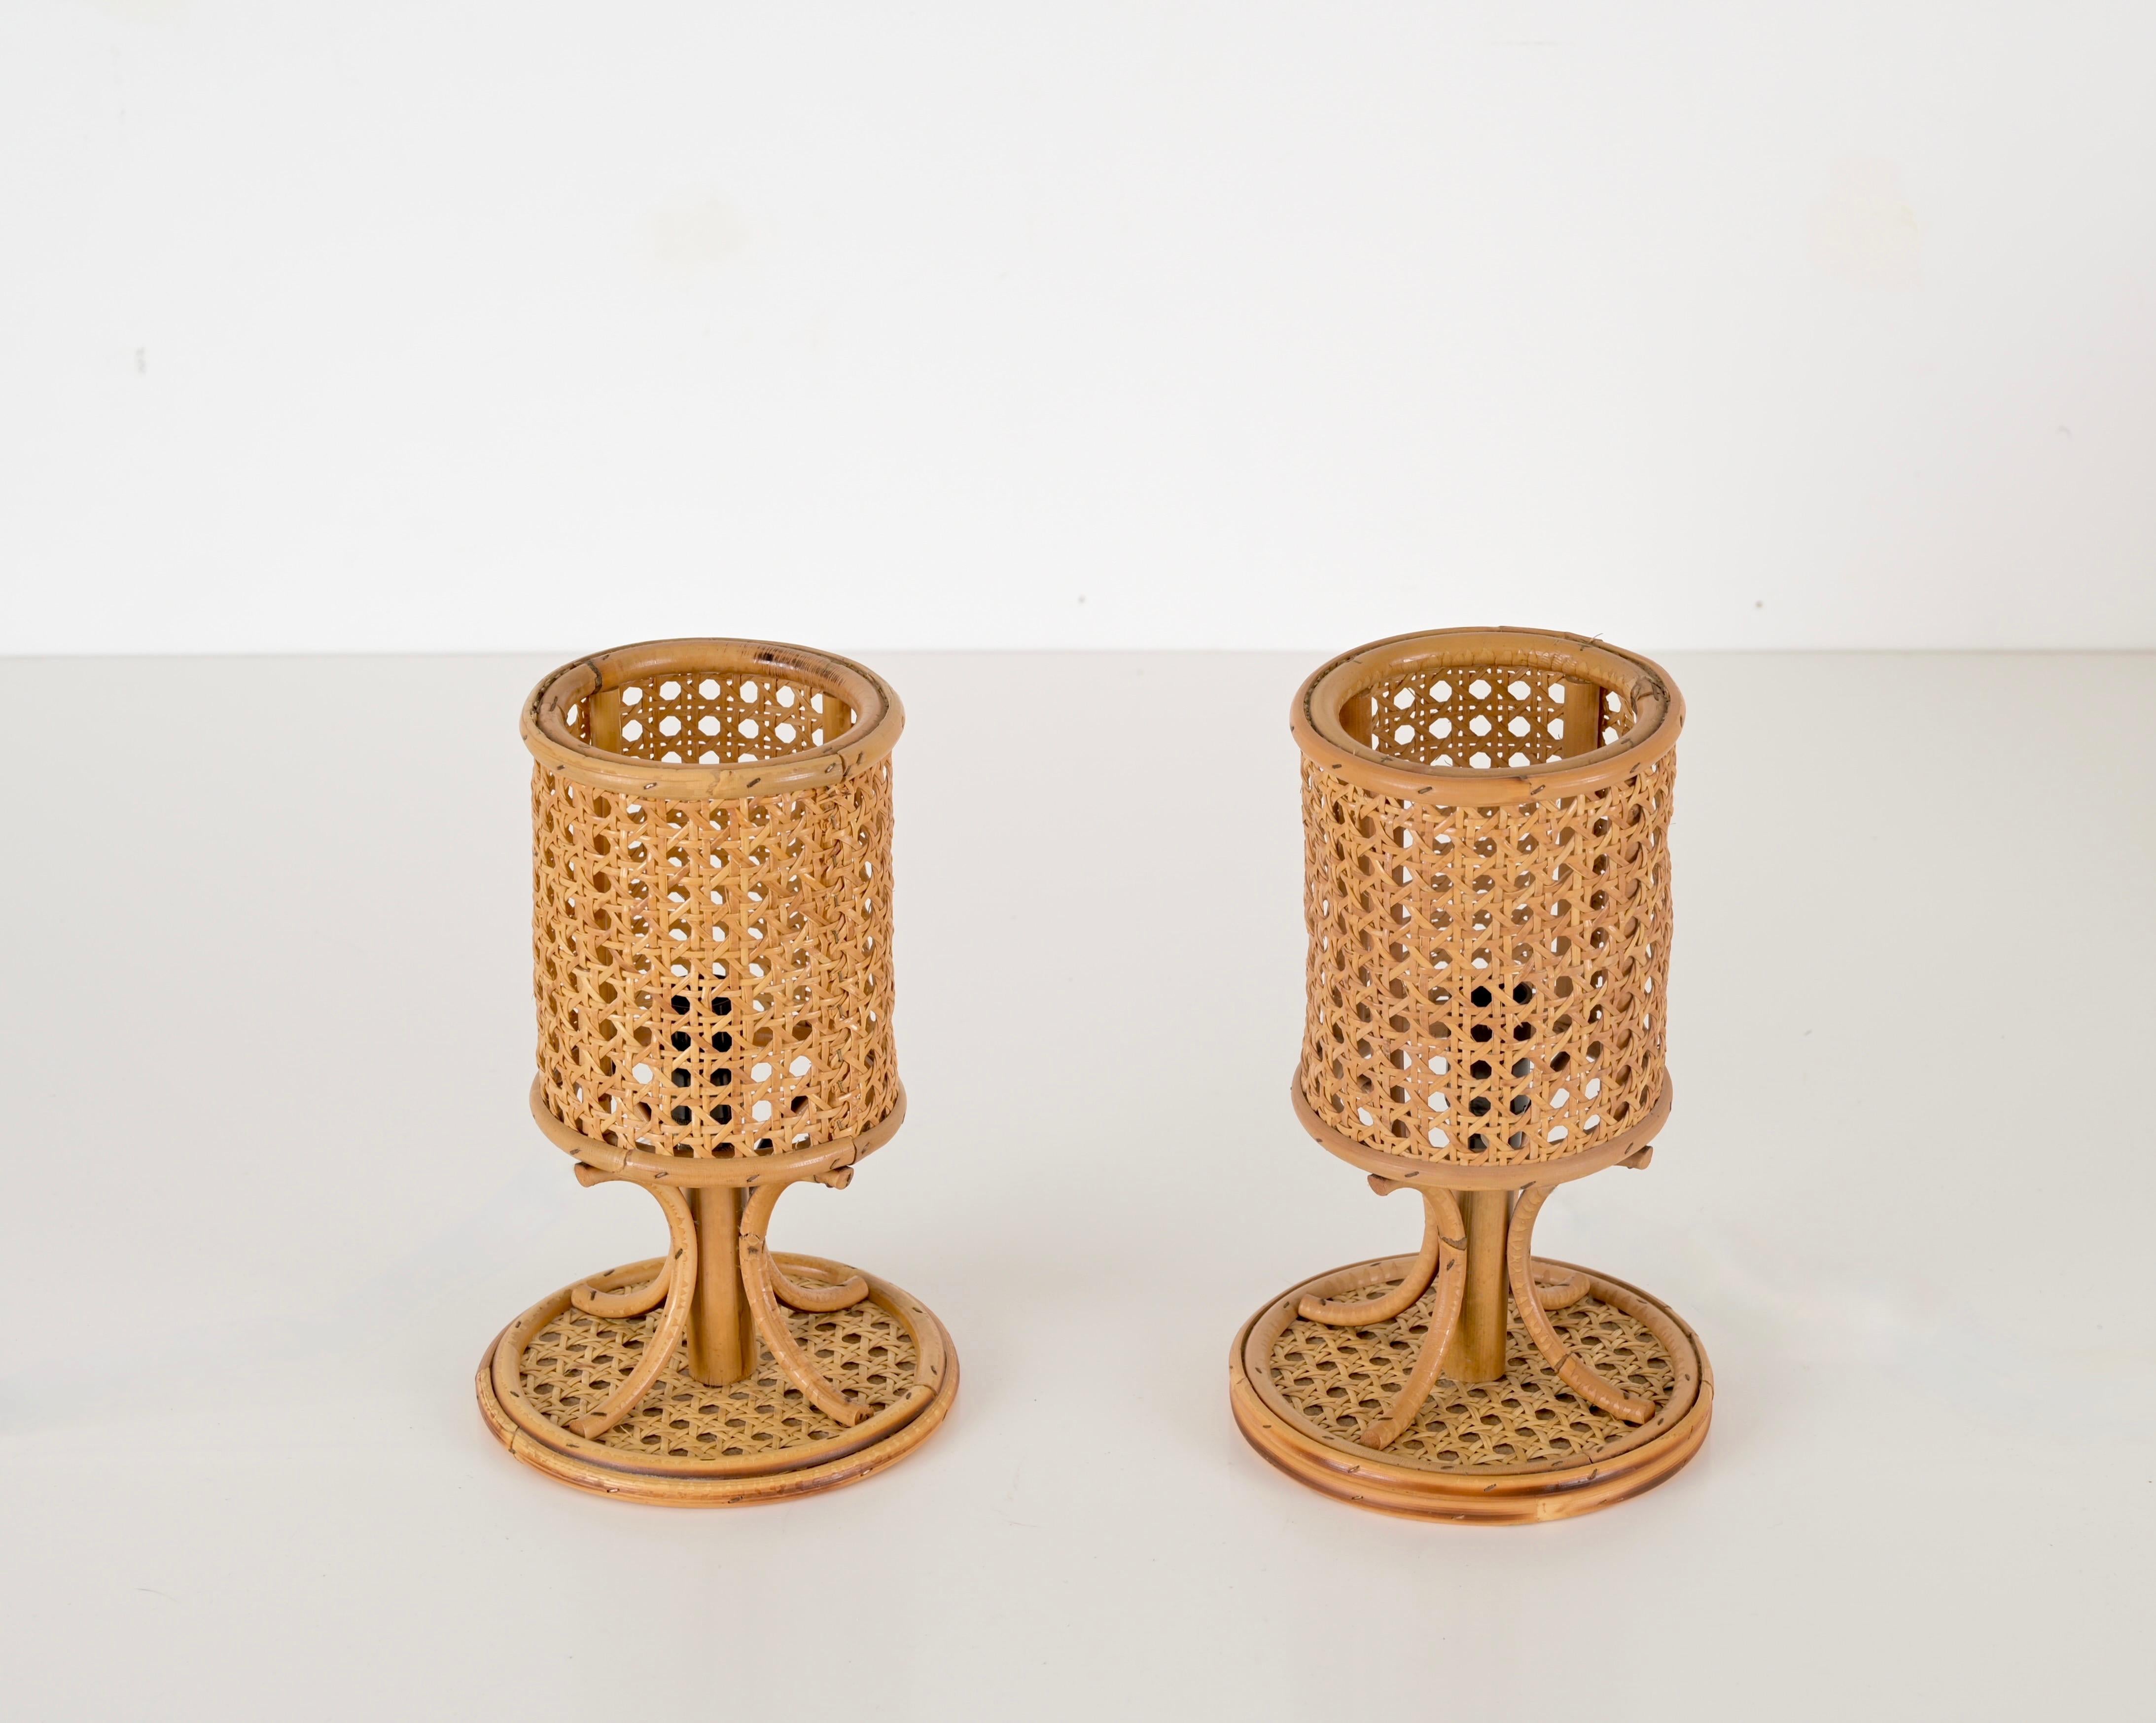 Hübsches Paar runder Tischlampen aus gebogenem Rattan und handgeflochtenem Wiener Stroh. Diese hübschen Lampen für die Côte d'Azur wurden in den 1960er Jahren in Frankreich hergestellt und werden Louis Sognot zugeschrieben. 

Die Lampen sind ein